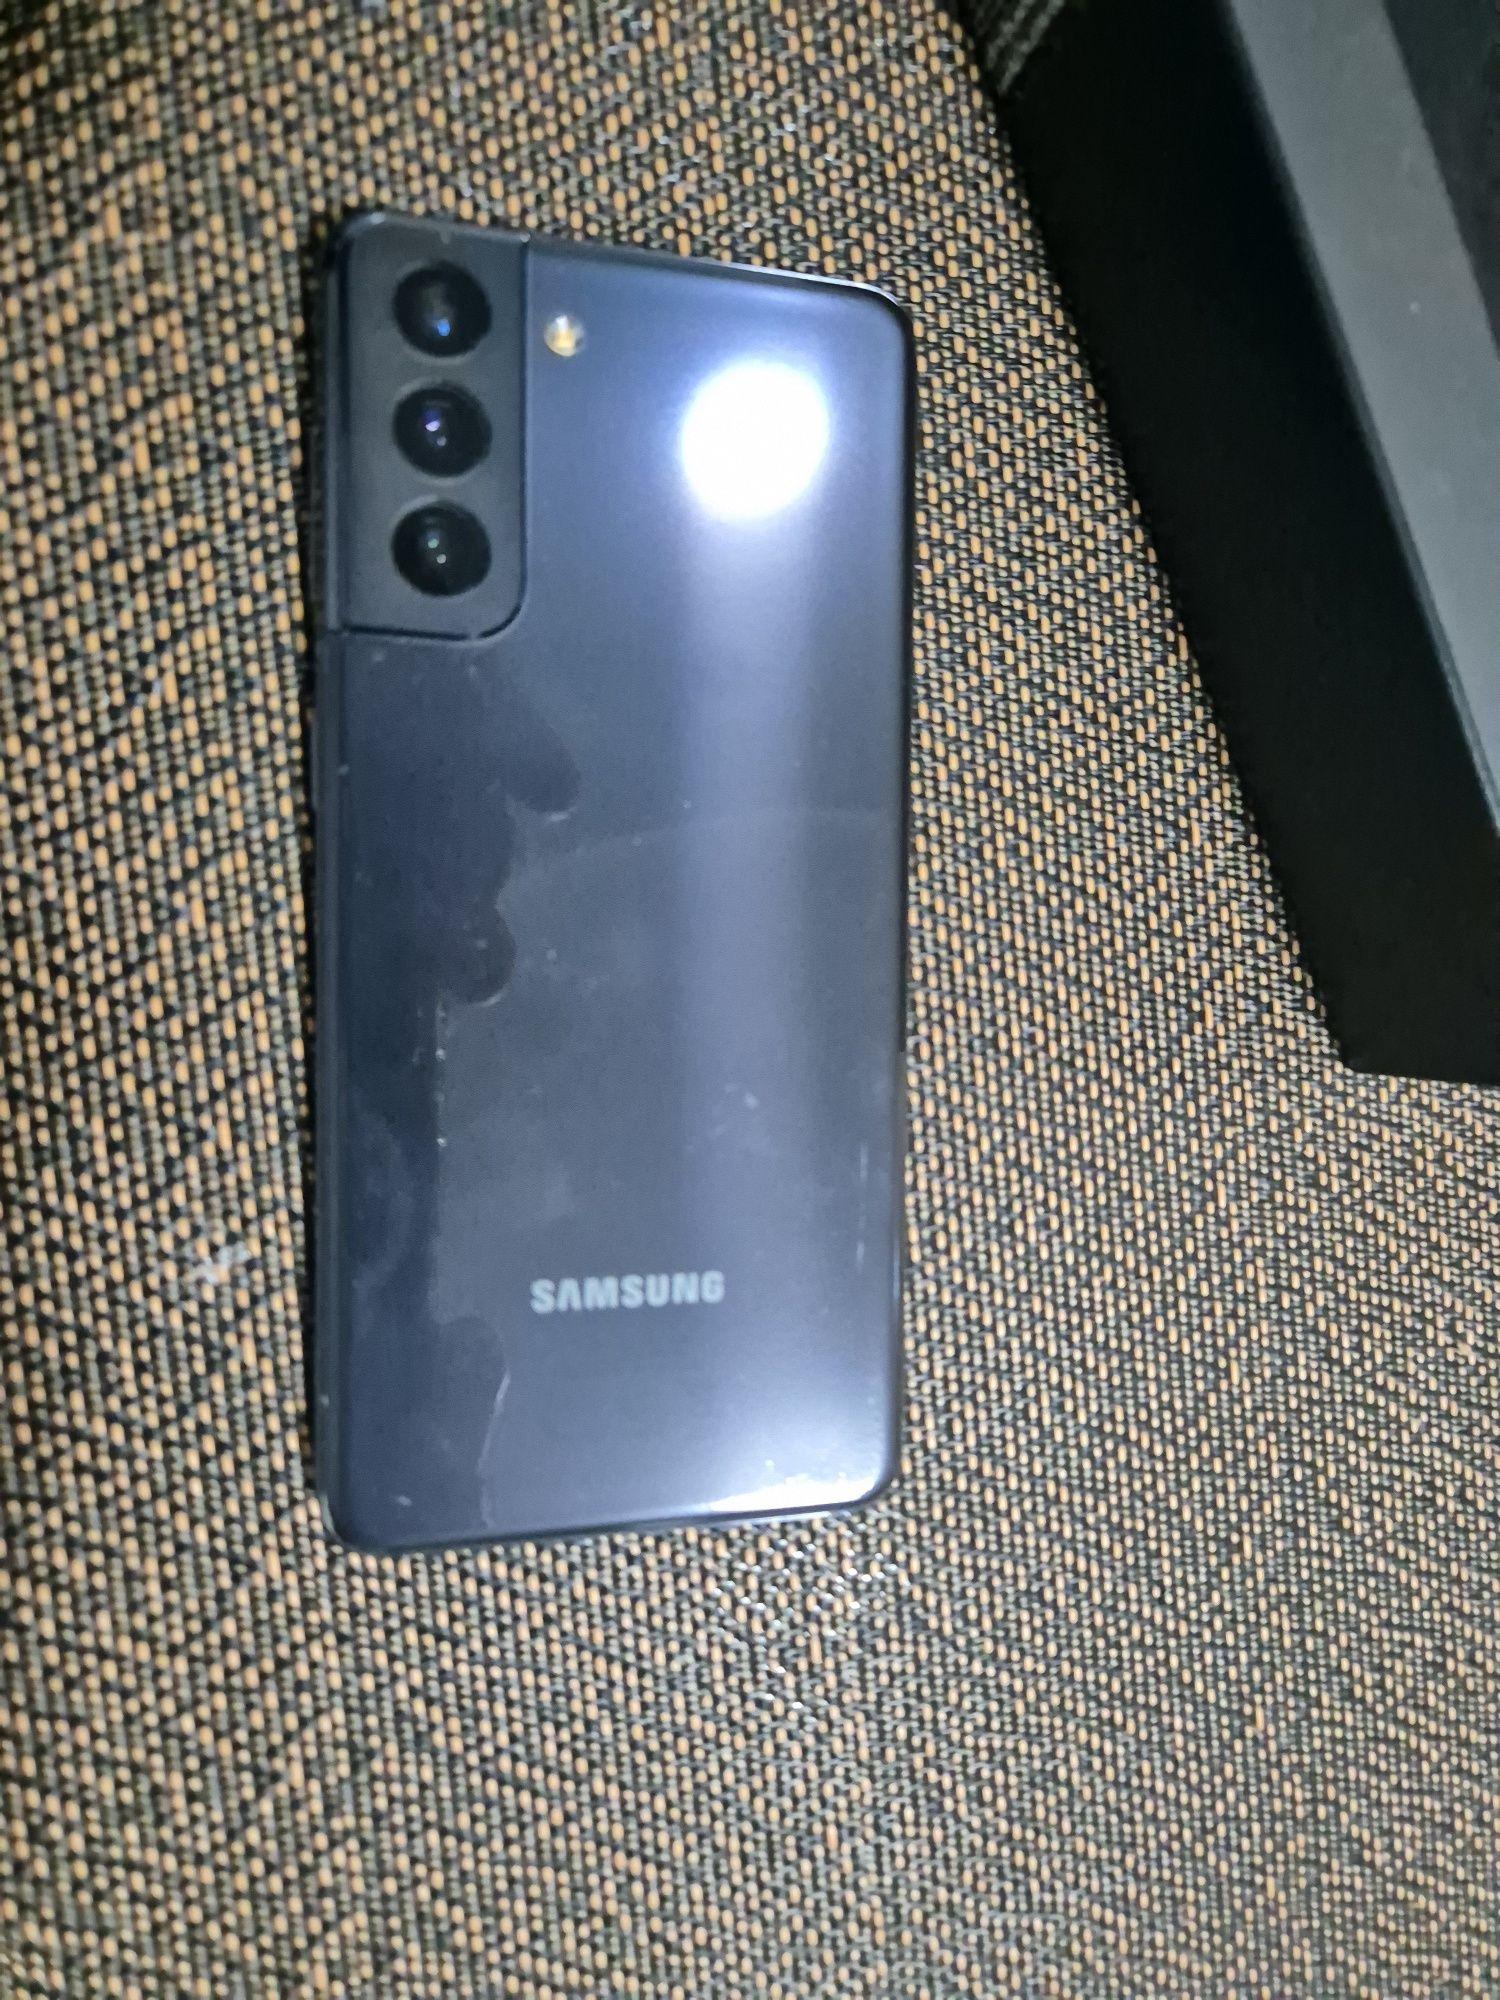 Samsung galaxy s21